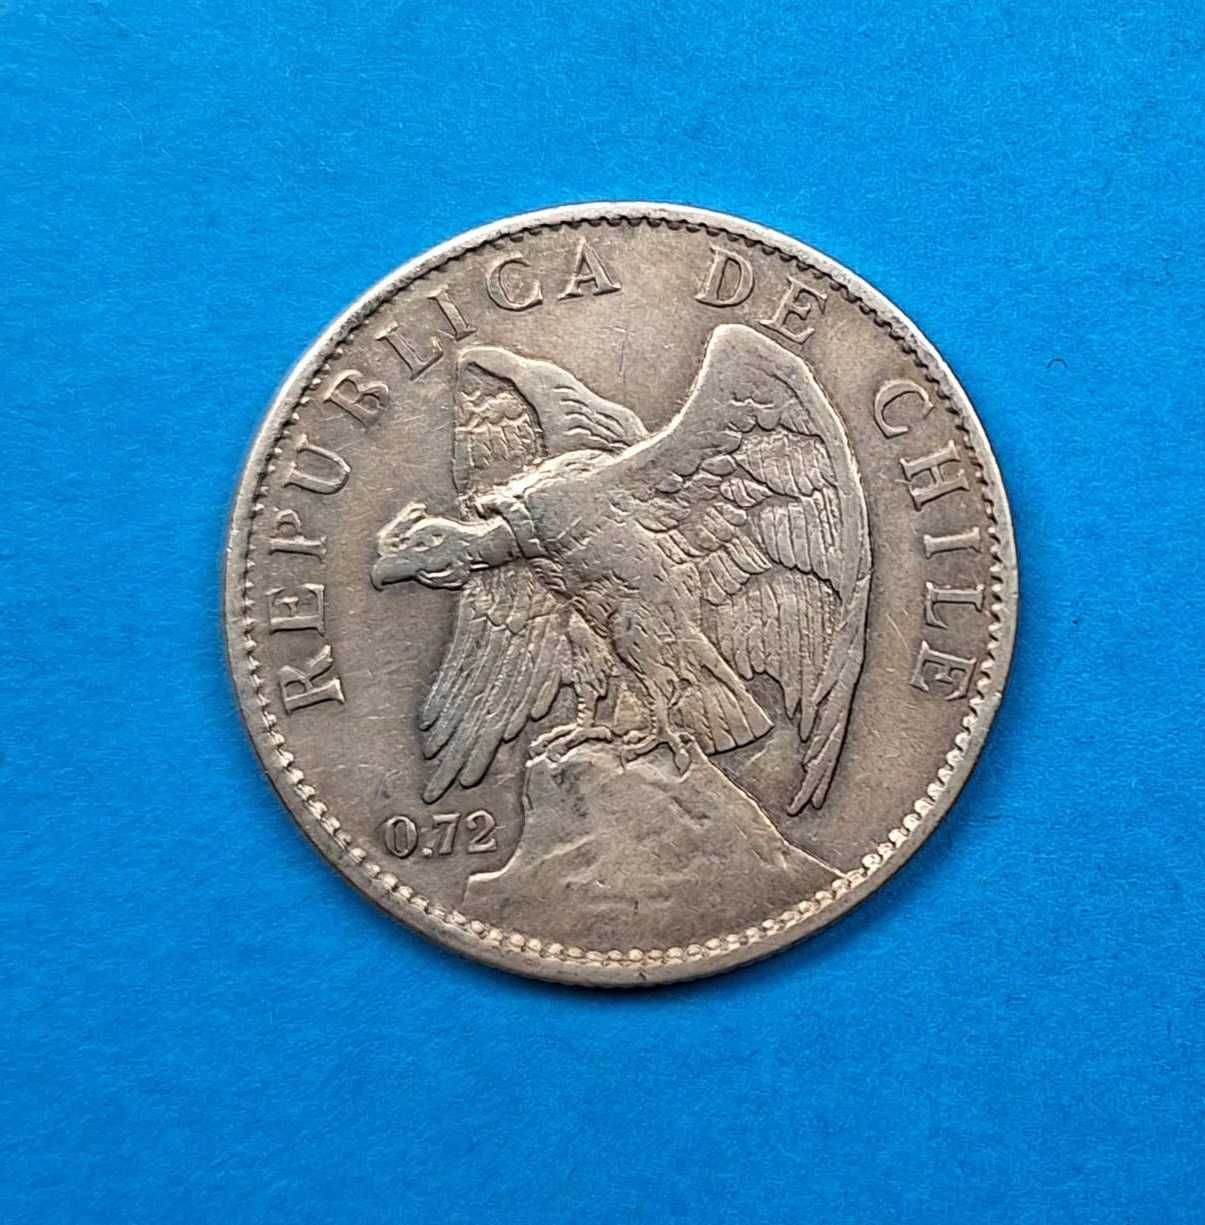 Chile 1 peso rok 1915, bardzo dobry stan, srebro 0,720